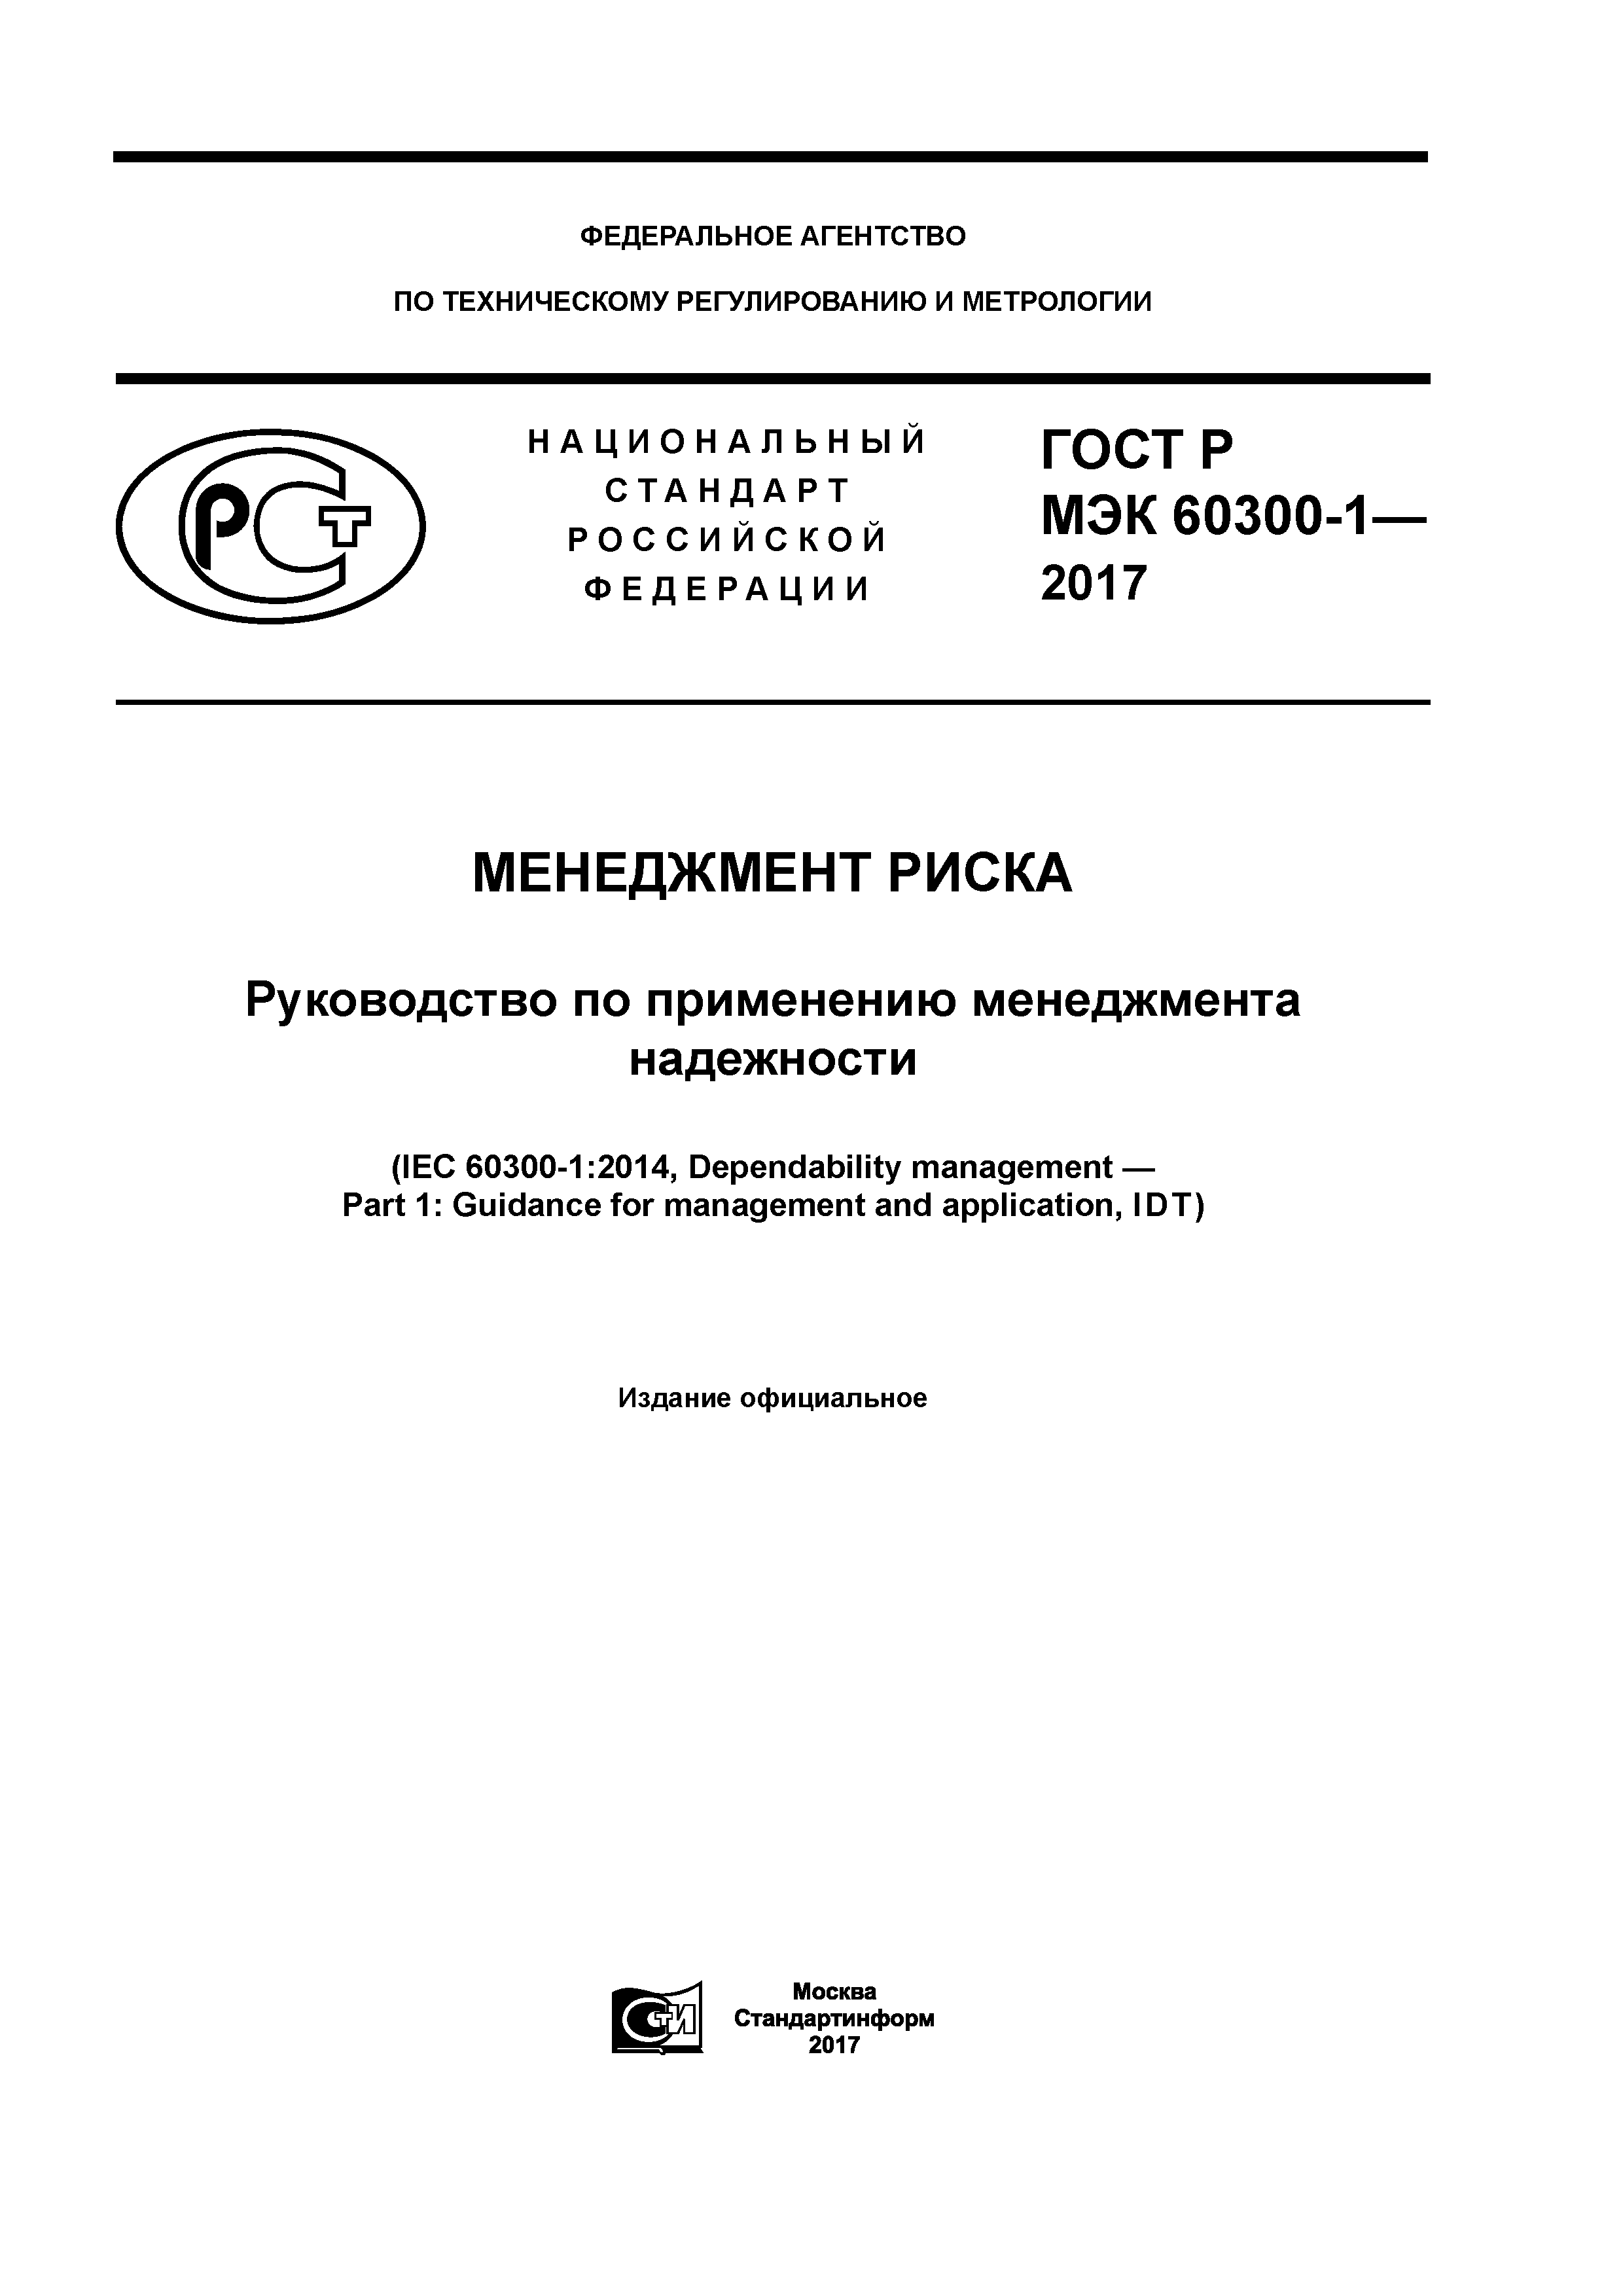 ГОСТ Р МЭК 60300-1-2017